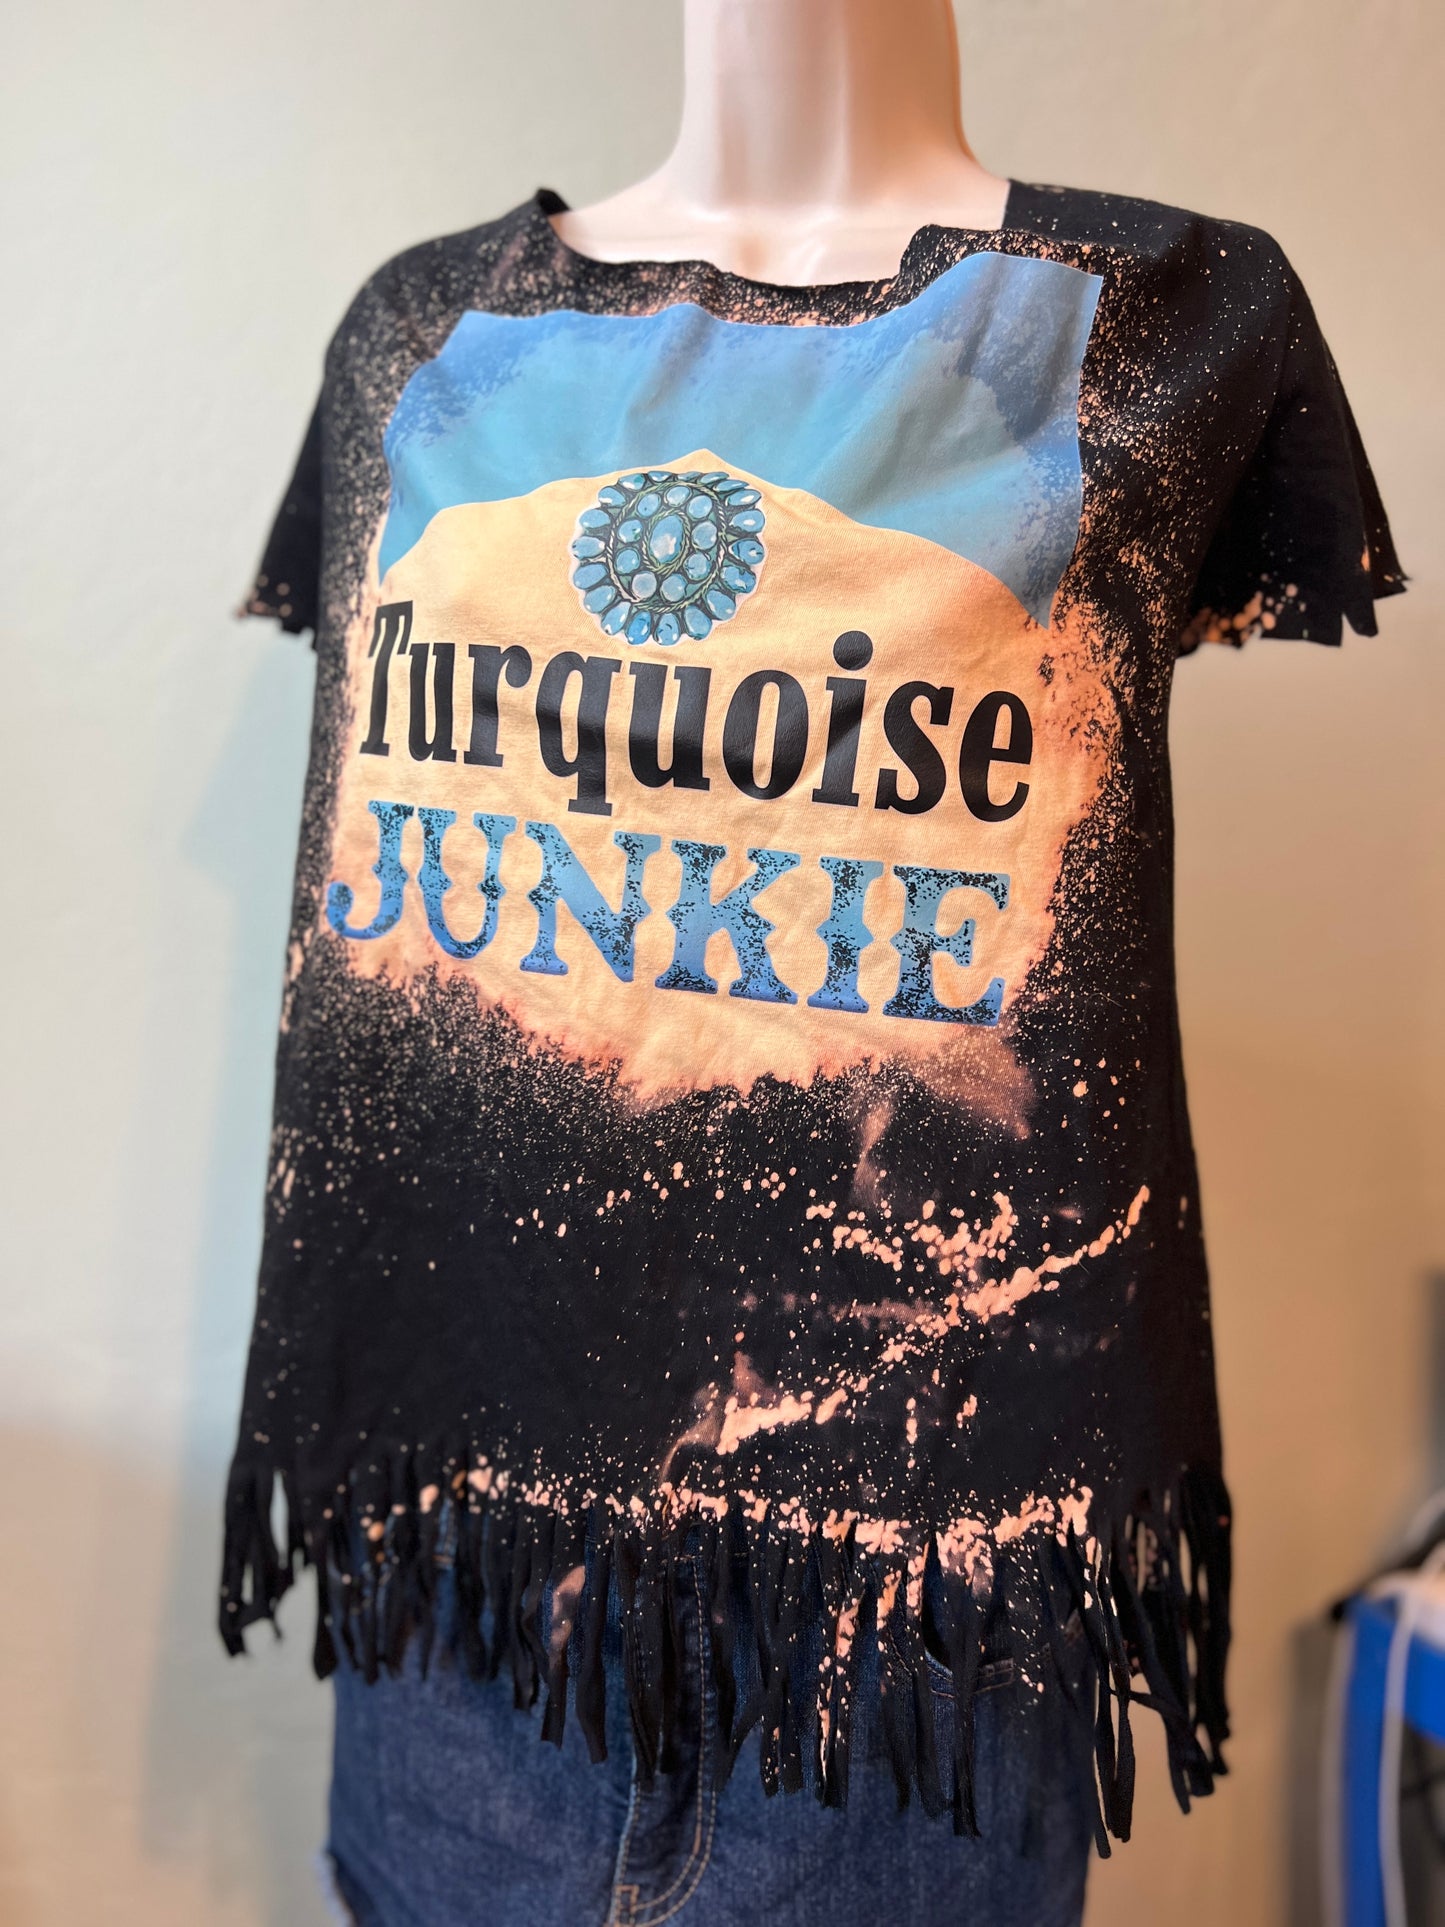 Turquoise Junkie // TEE